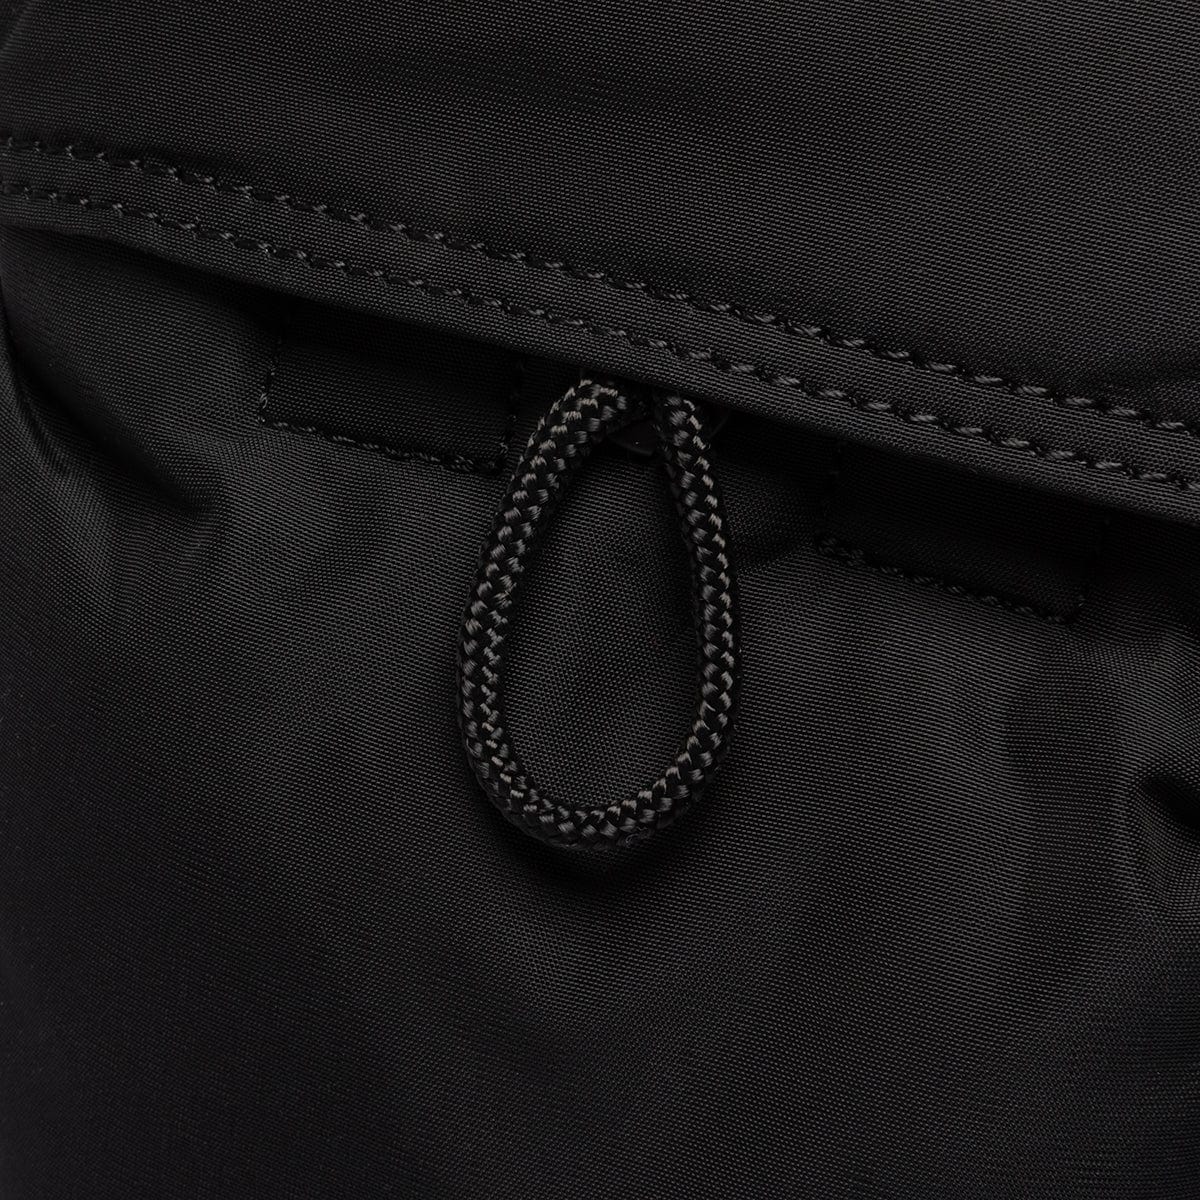 PORTER YOSHIDA & CO Accessories - Bags BLACK / O/S SENSES VERTICAL SHOULDER BAG